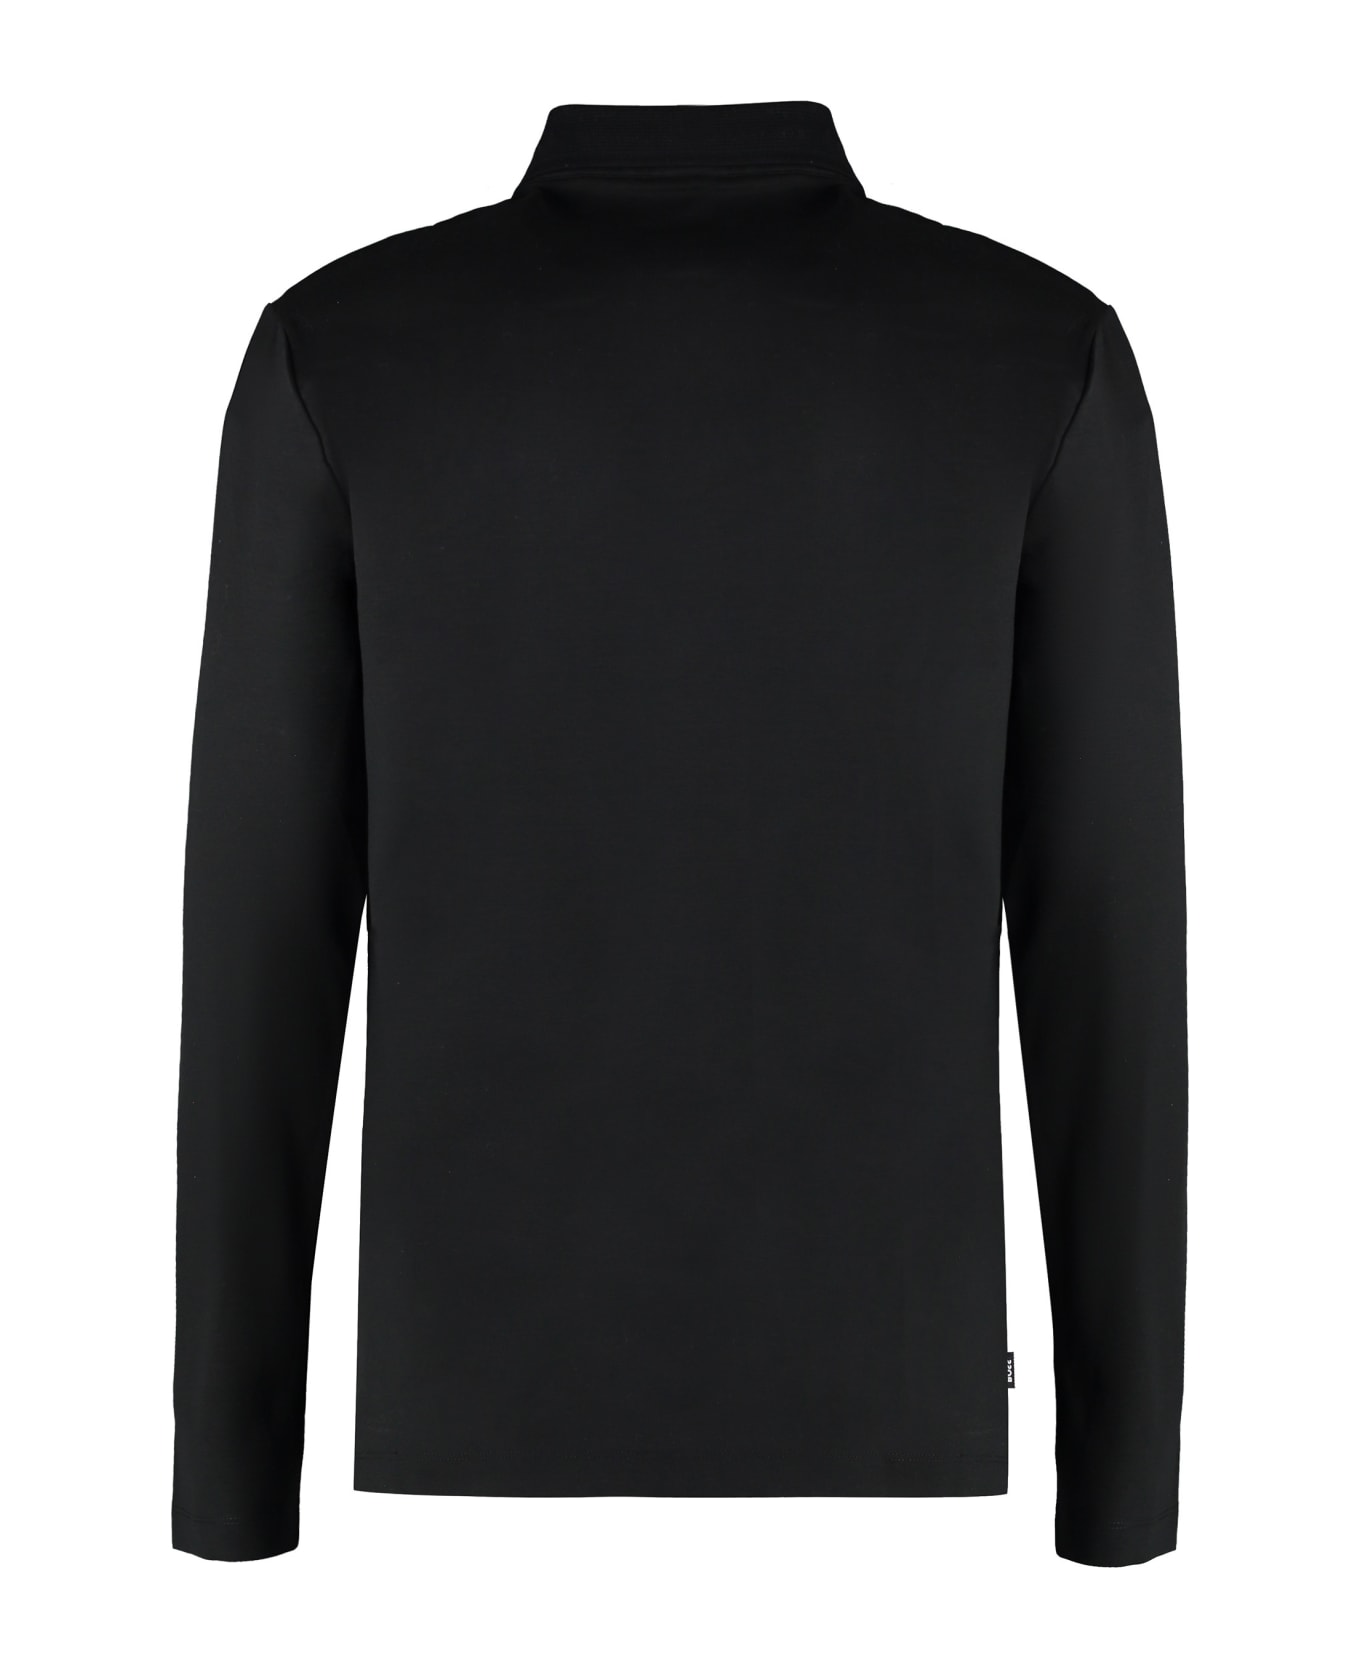 Hugo Boss Long Sleeve Cotton Polo Shirt - black ポロシャツ